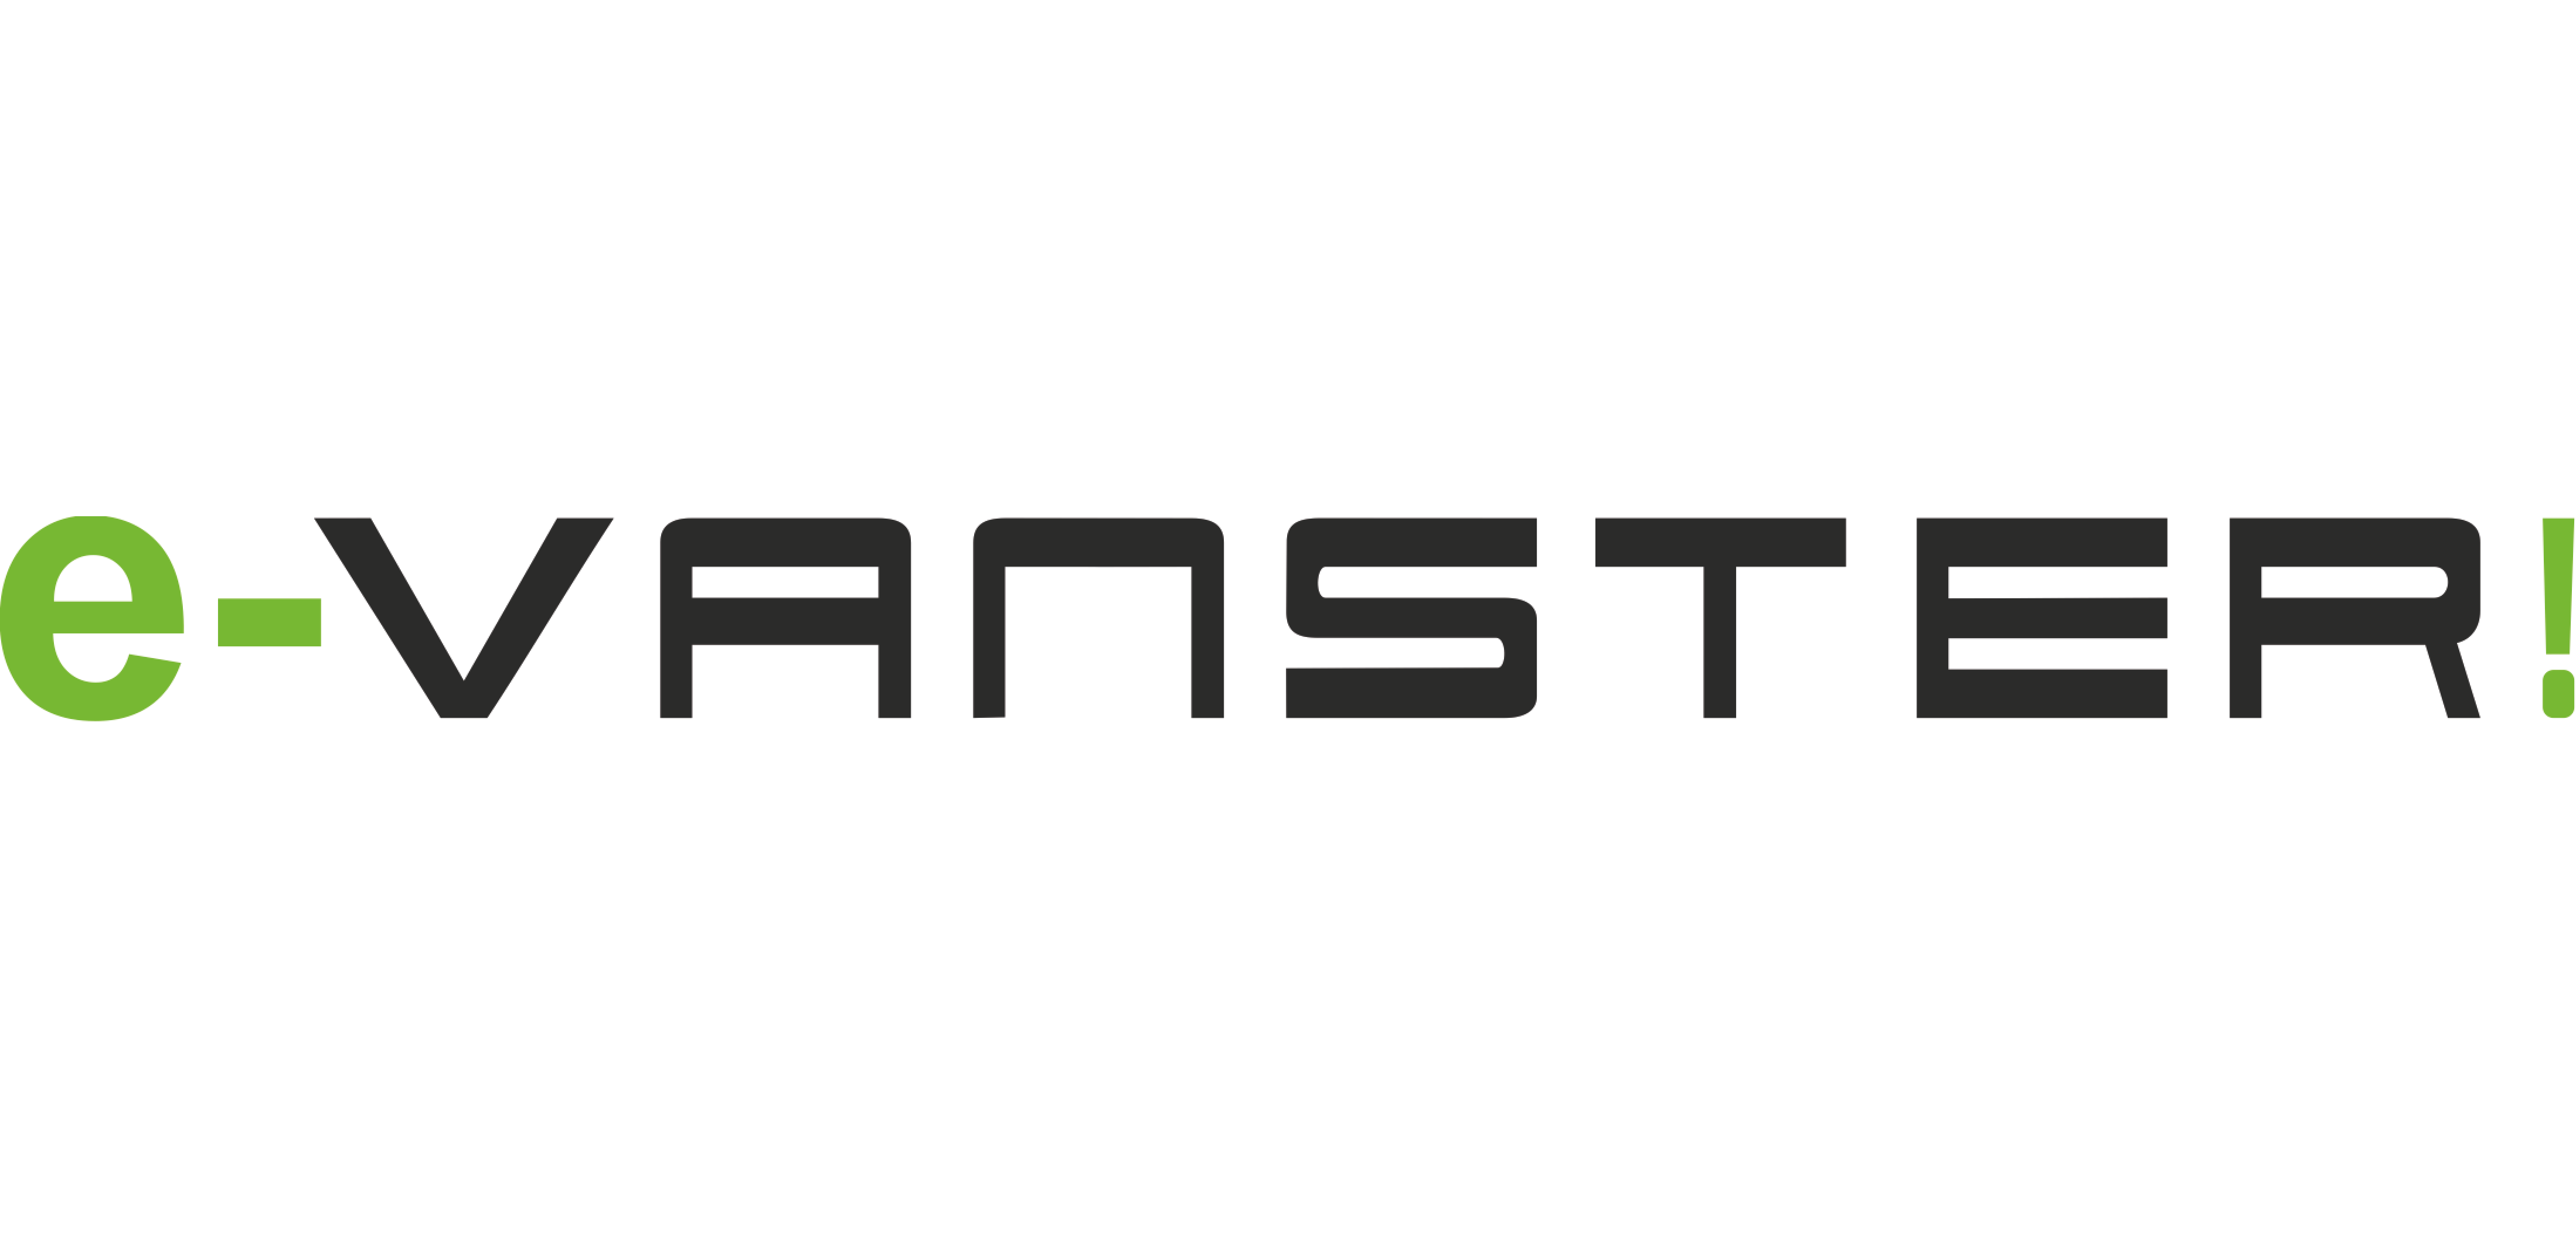 Het logo van de E-Vanster